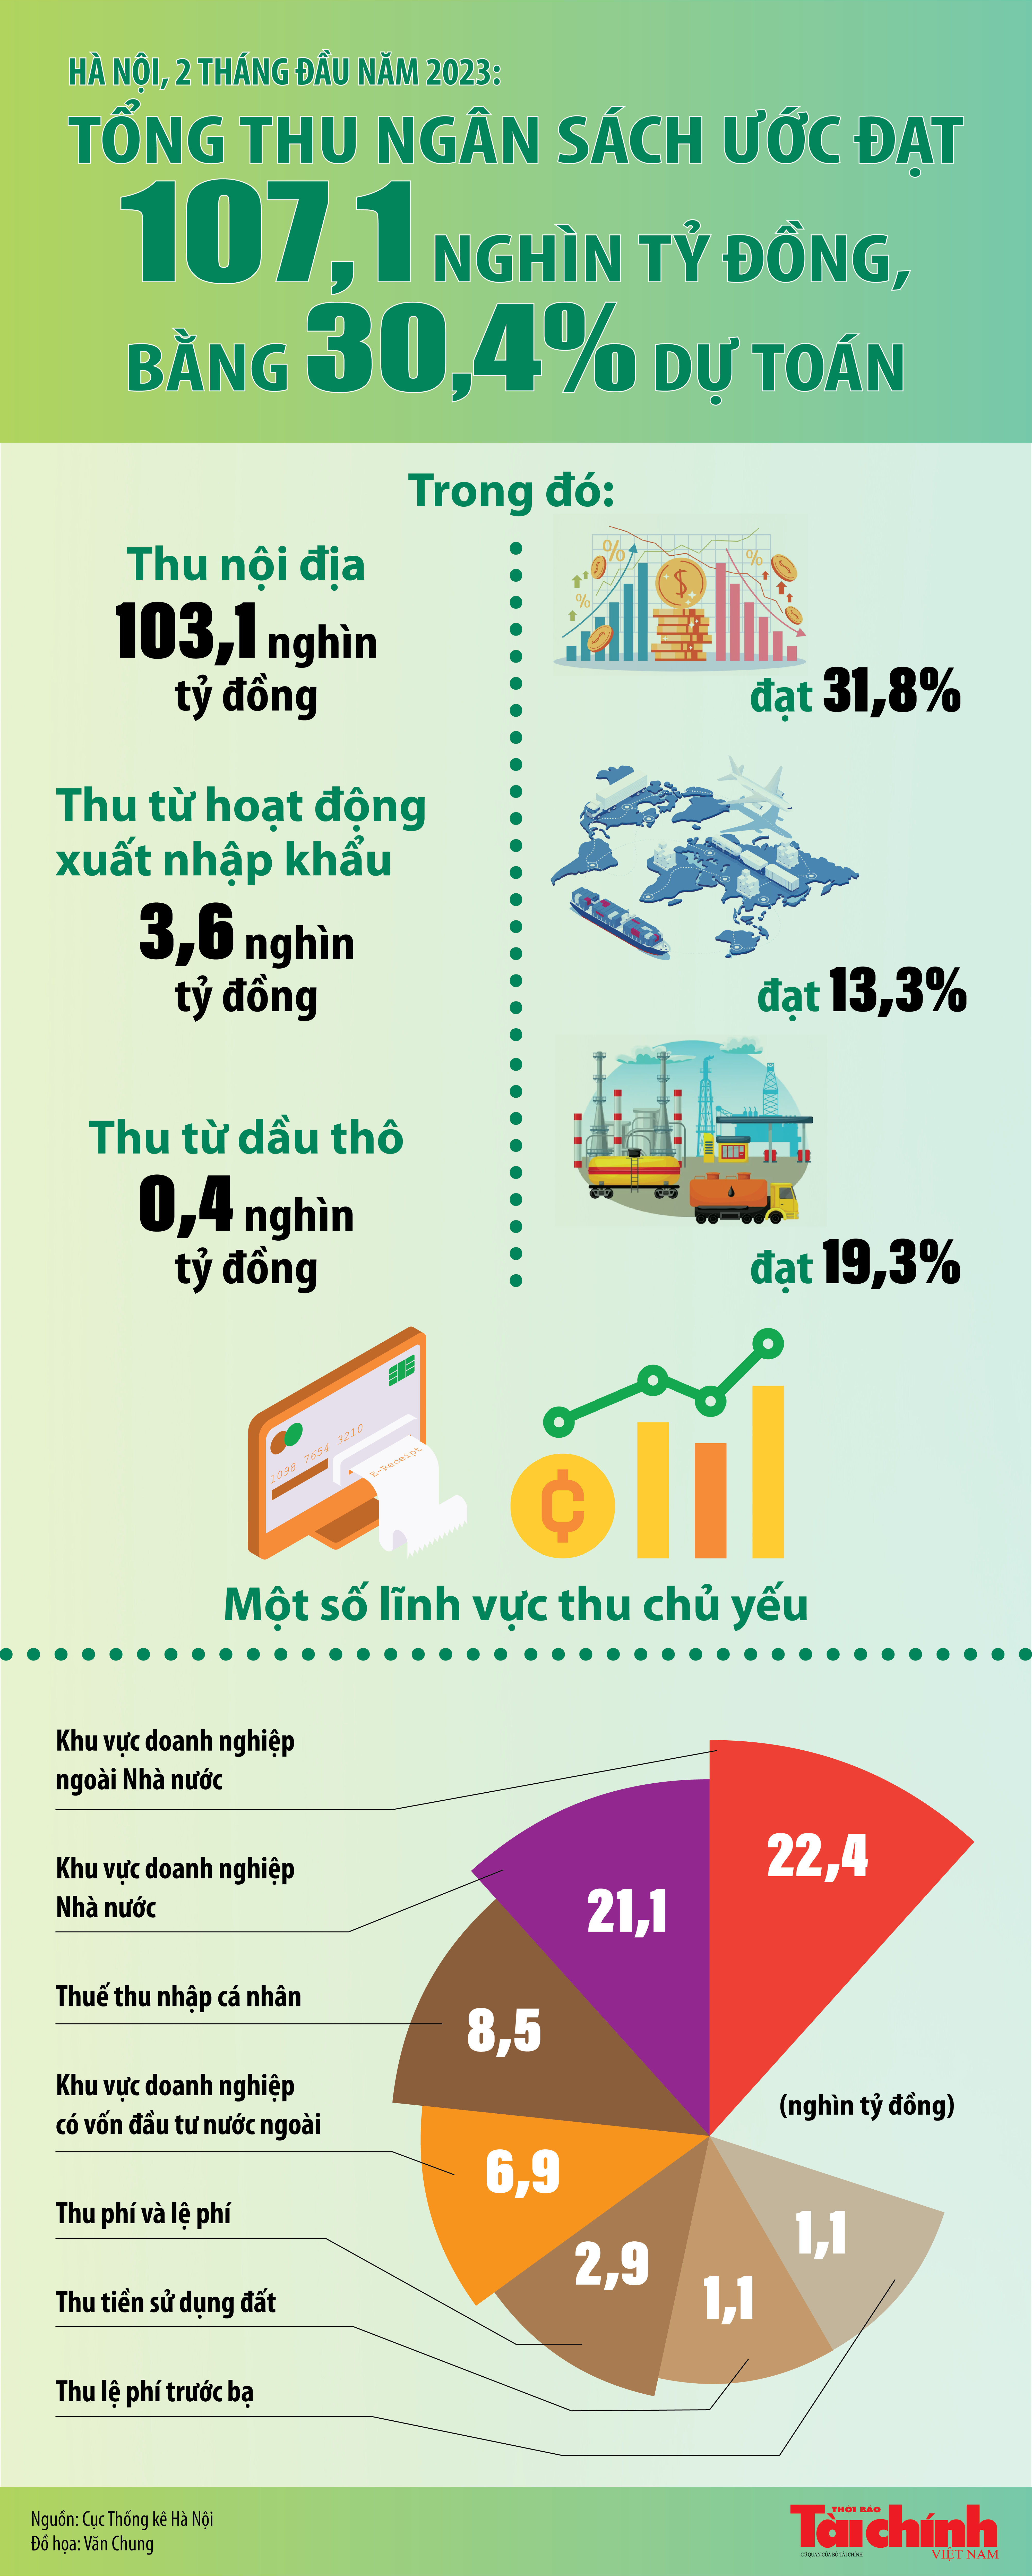 Hà Nội: Tổng thu ngân sách 2 tháng đầu năm ước đạt 107,1 nghìn tỷ đồng